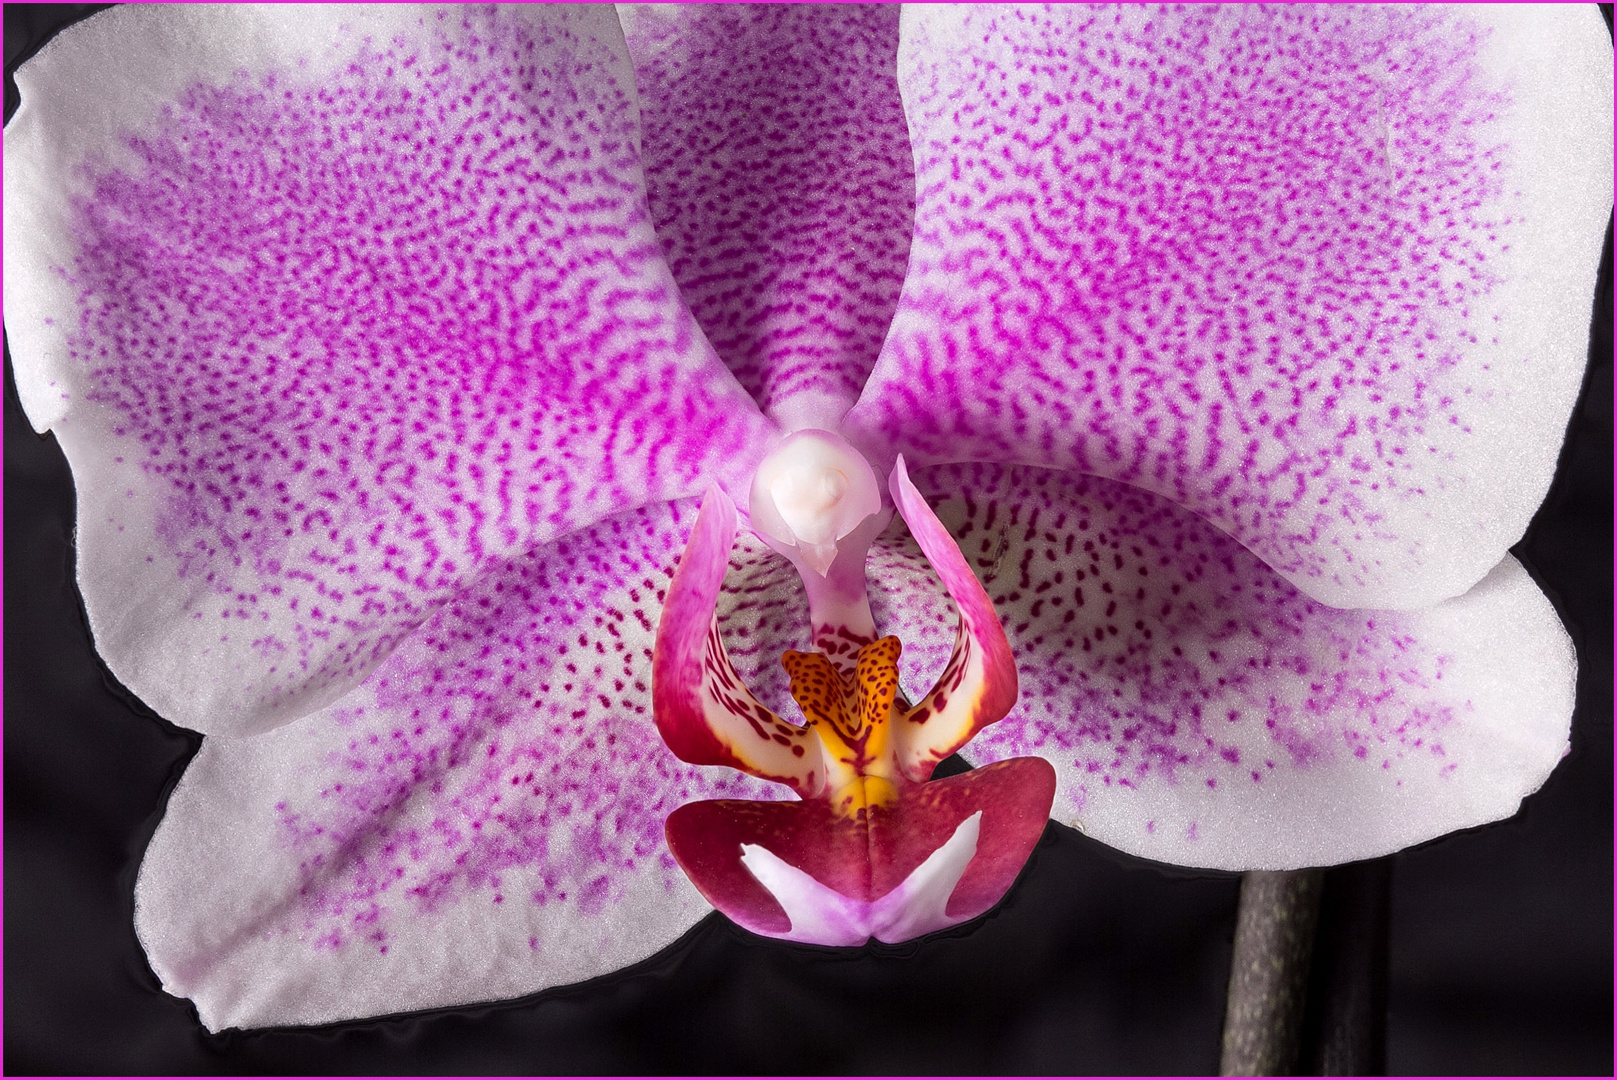 Die Blüte der Schmetterlings-Orchidee